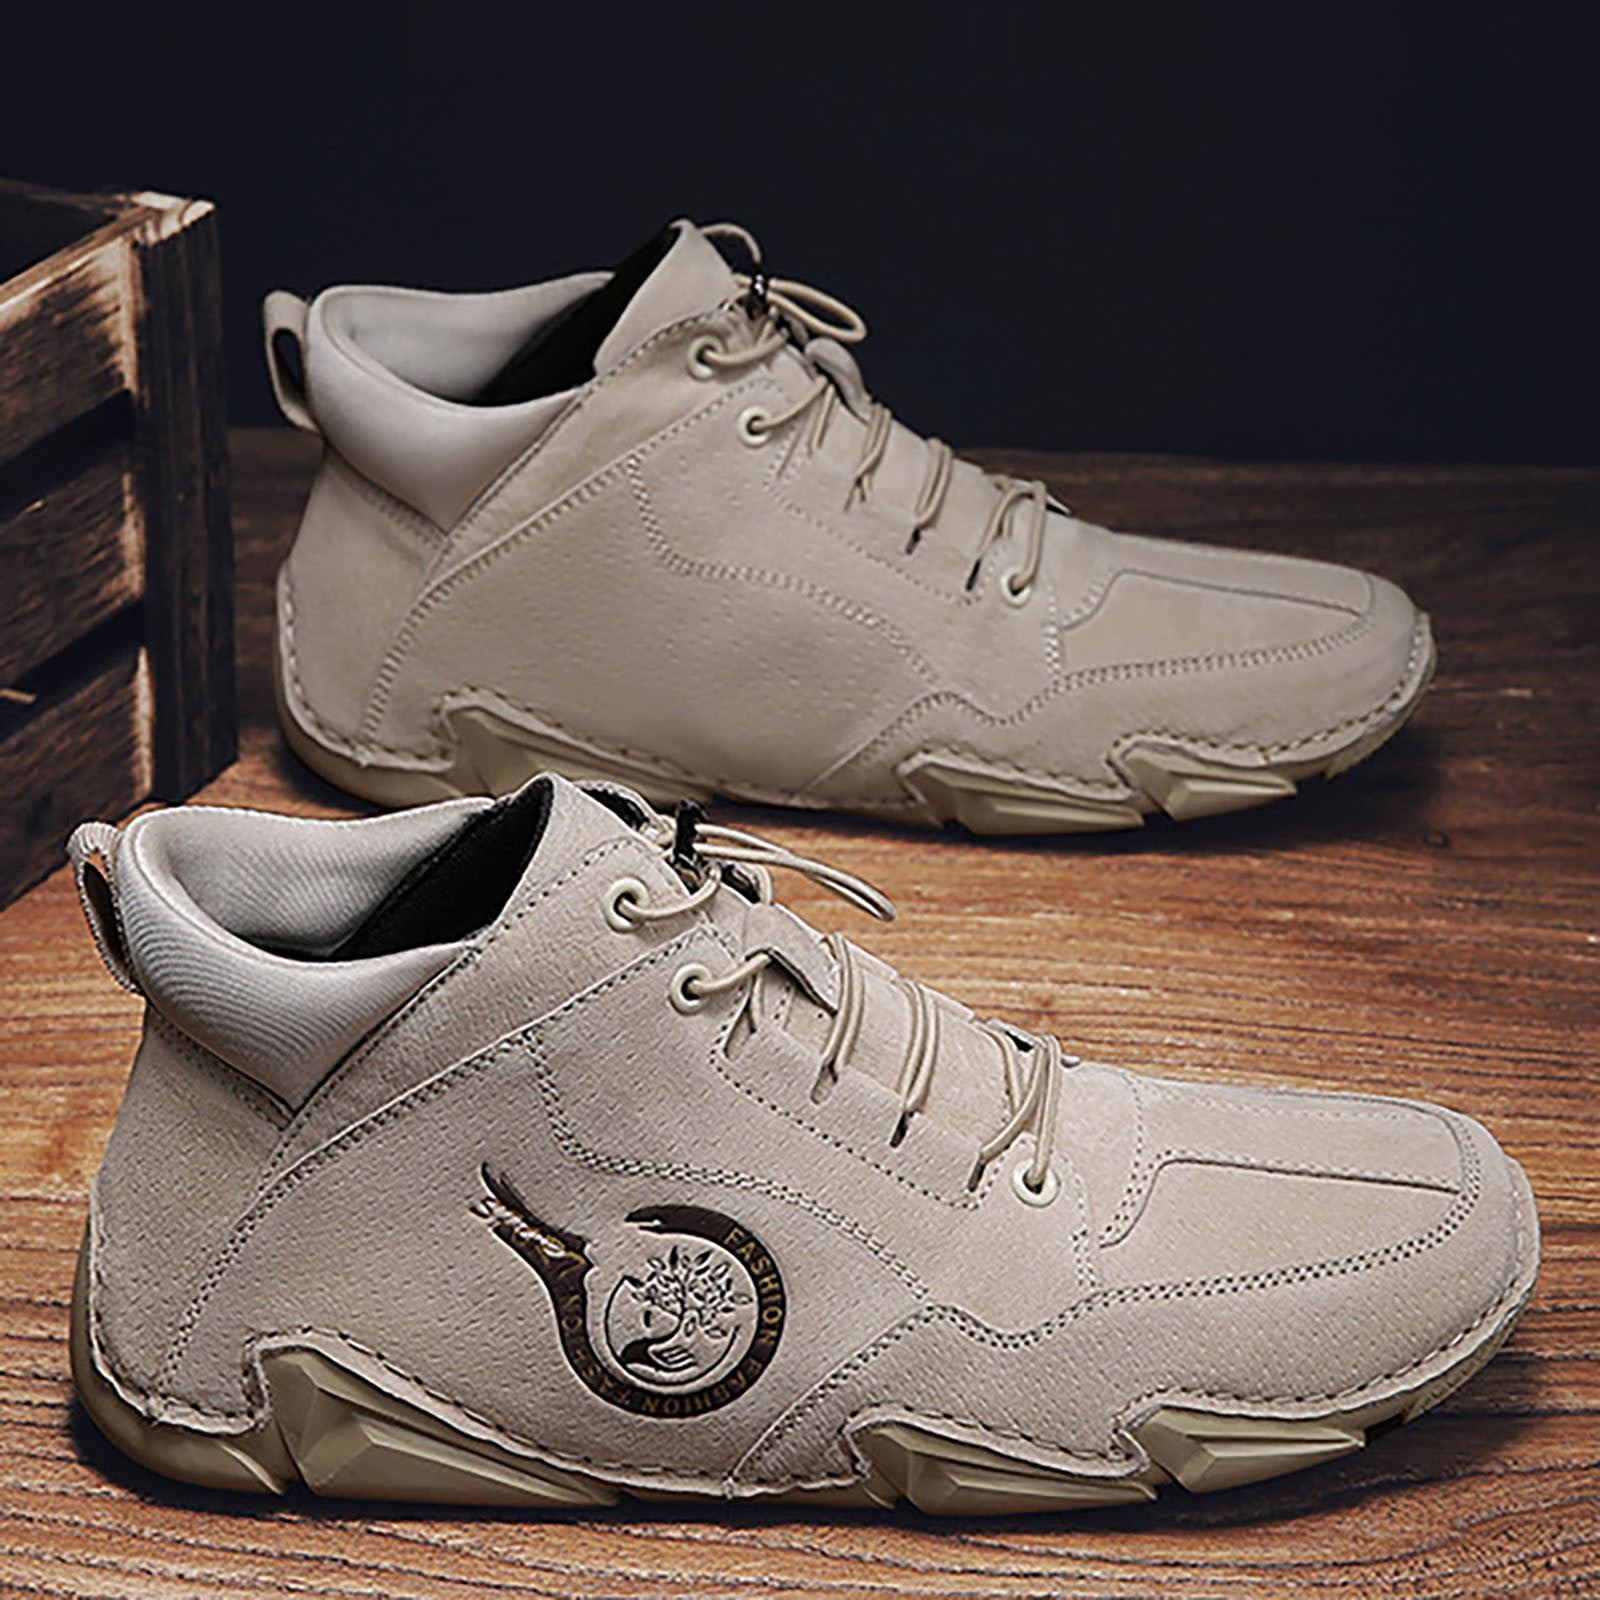 Peaskjp Mens Tennis Shoes Men's Lightweight Breathable Soft Bottom Non Slip Training Sneaker Walking Shoe Grey 9